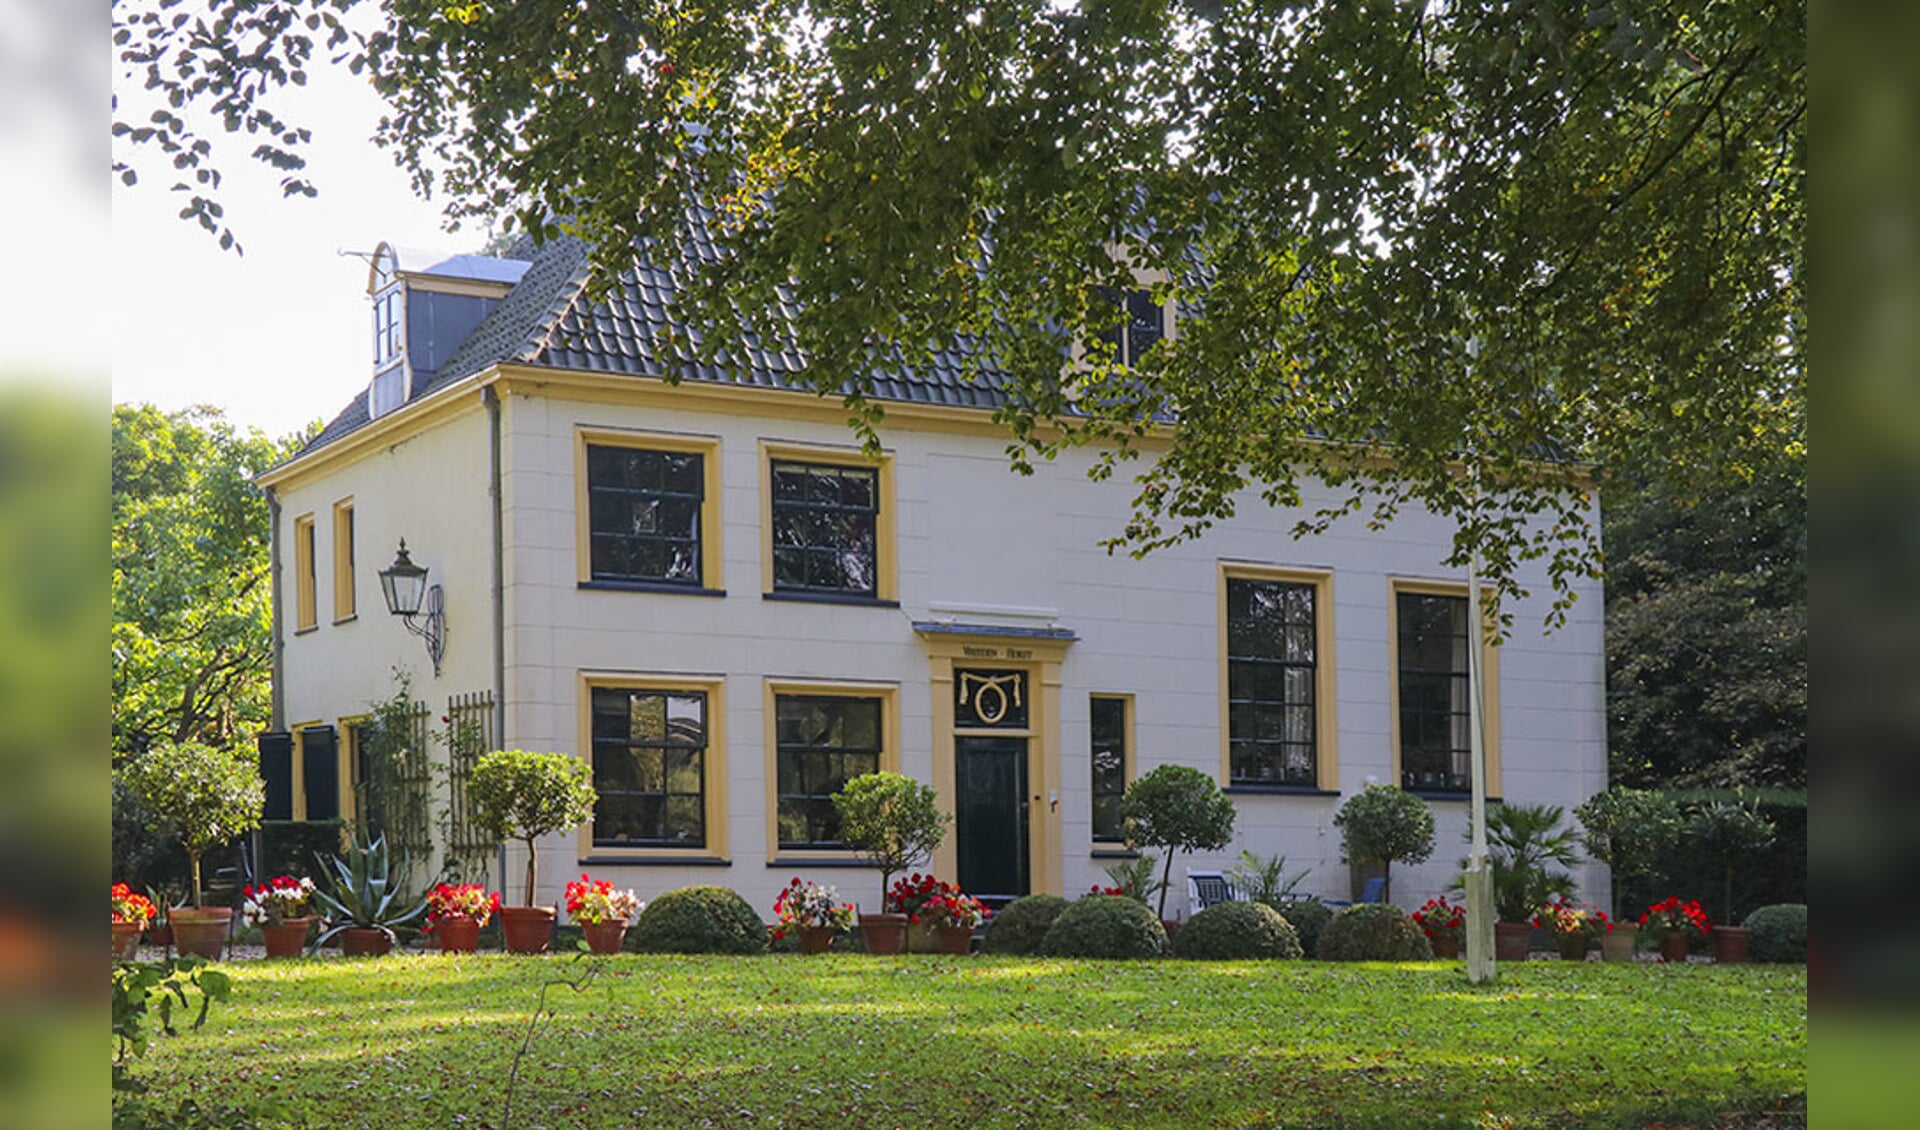 Buitenplaats Vreedenhorst in Vreeland